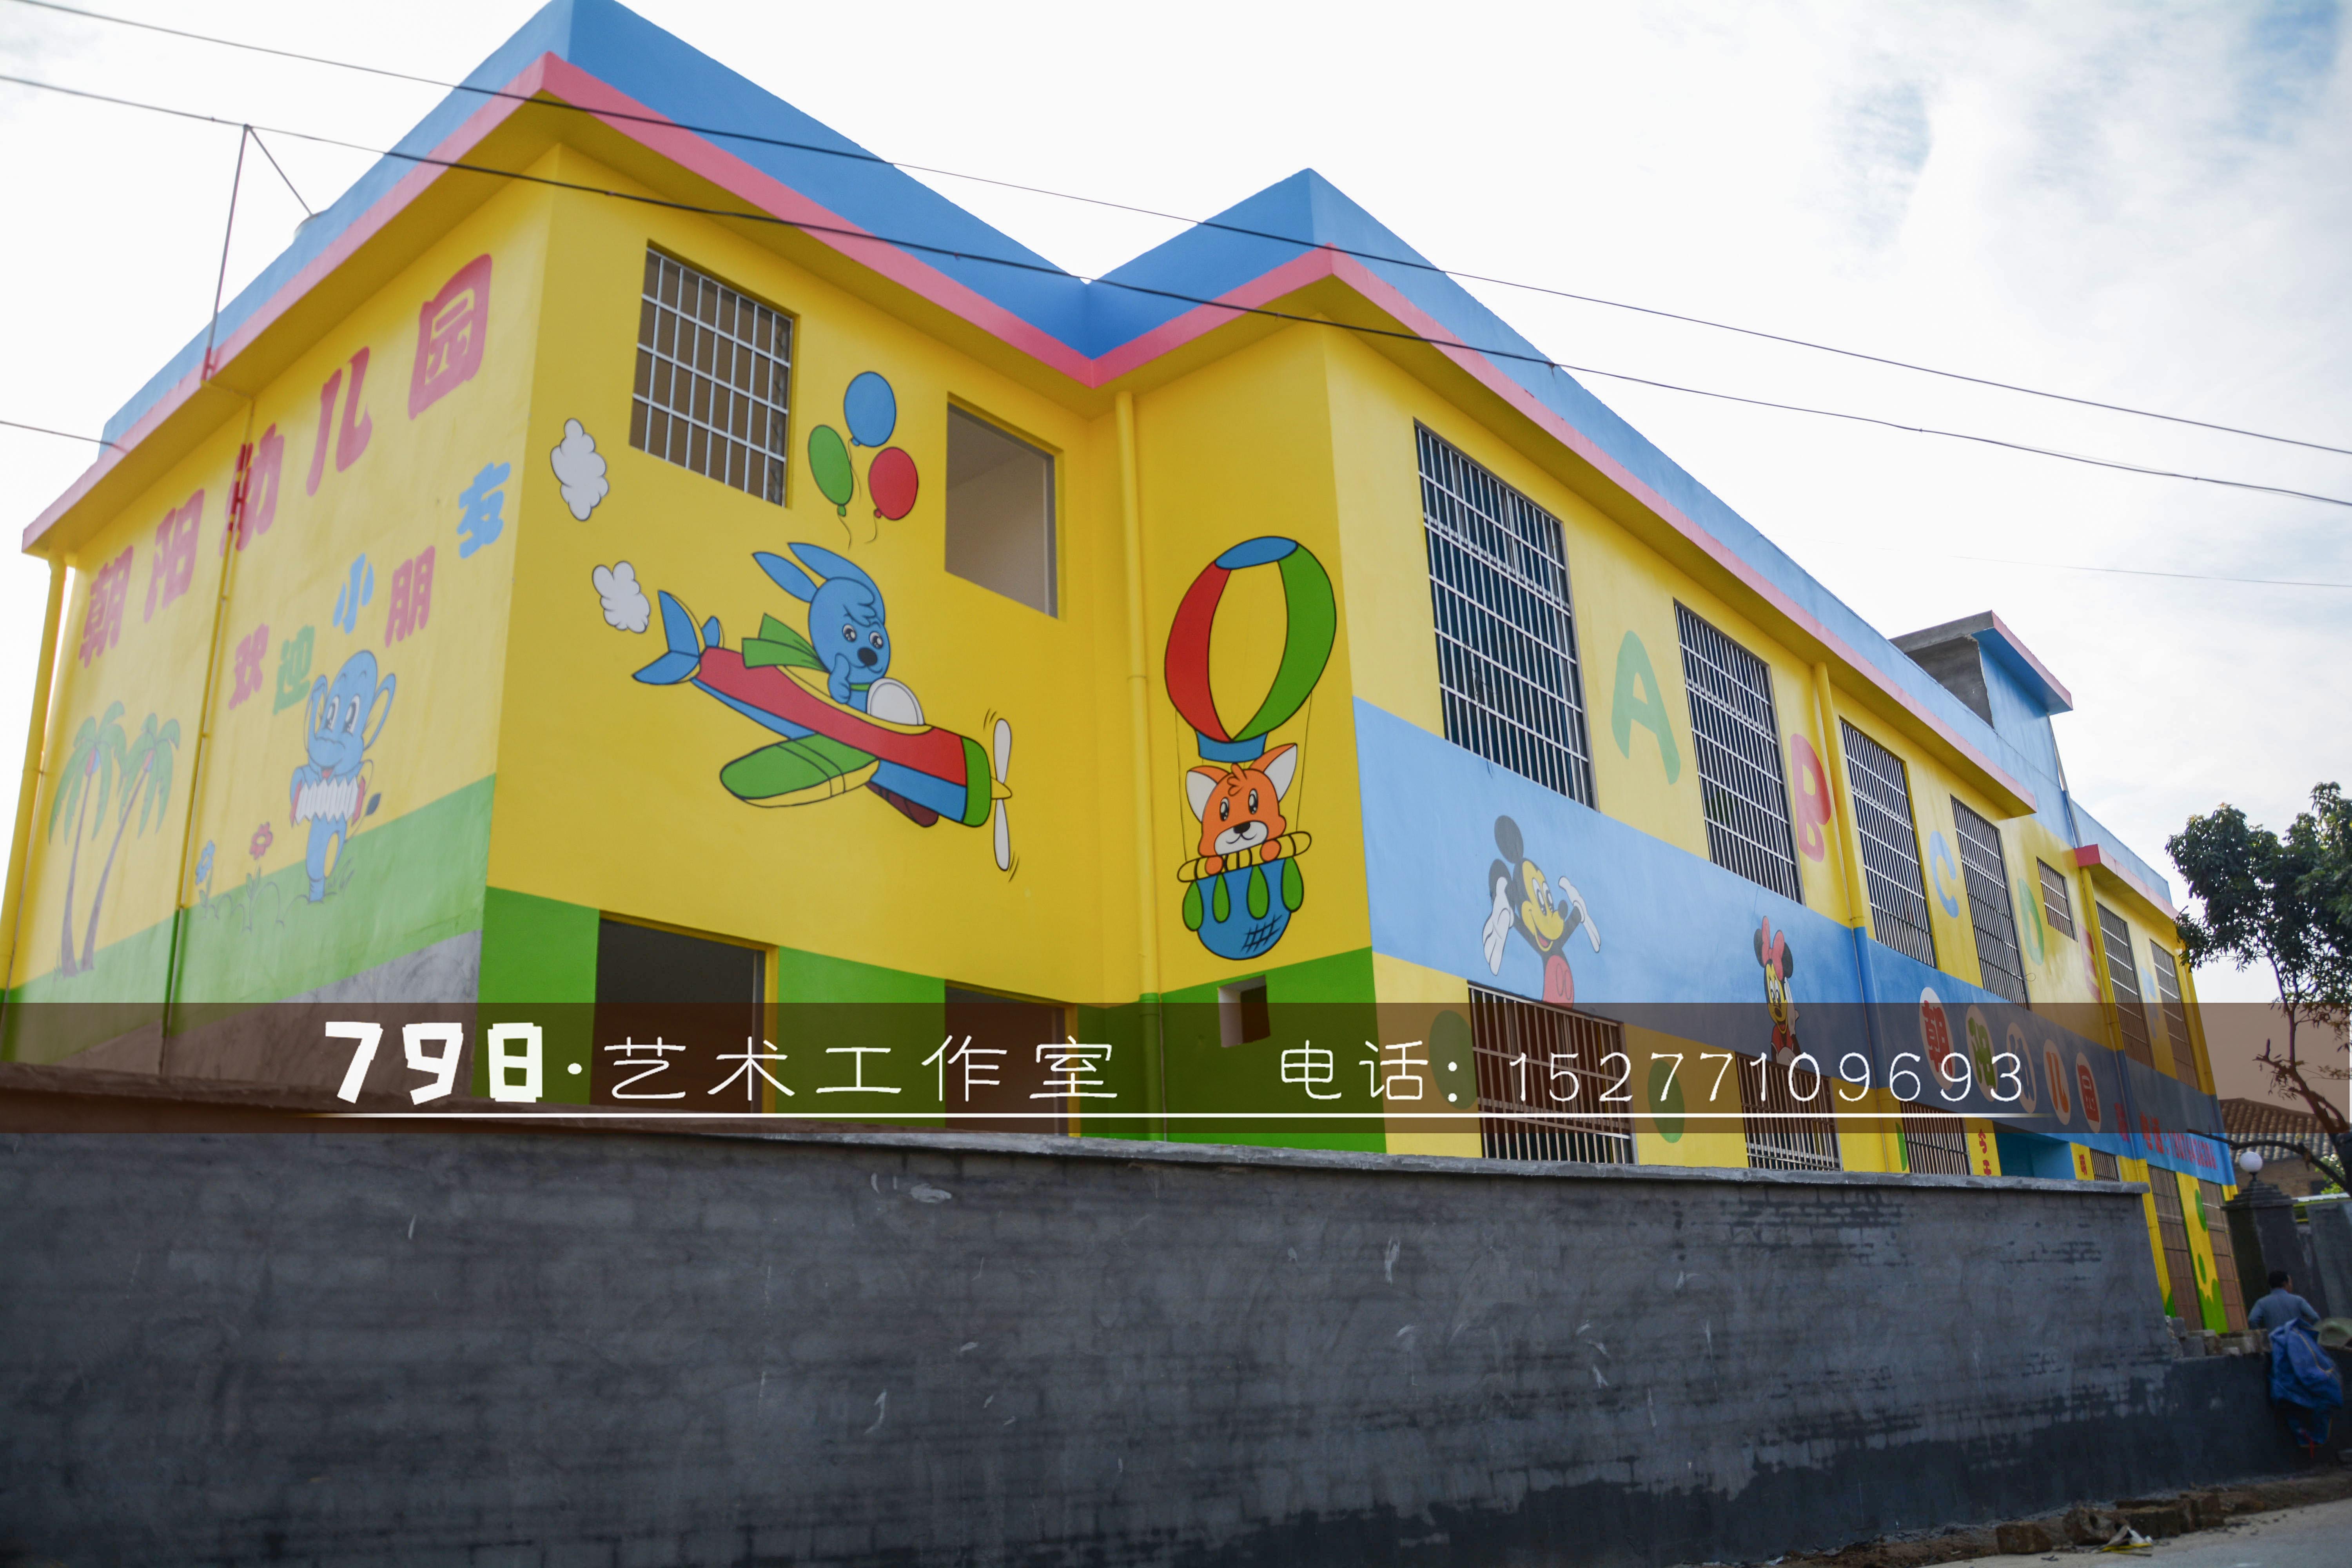 南宁798艺术工作室—专业幼儿园彩绘/喷绘/墙绘/手绘/墙画/设计装修